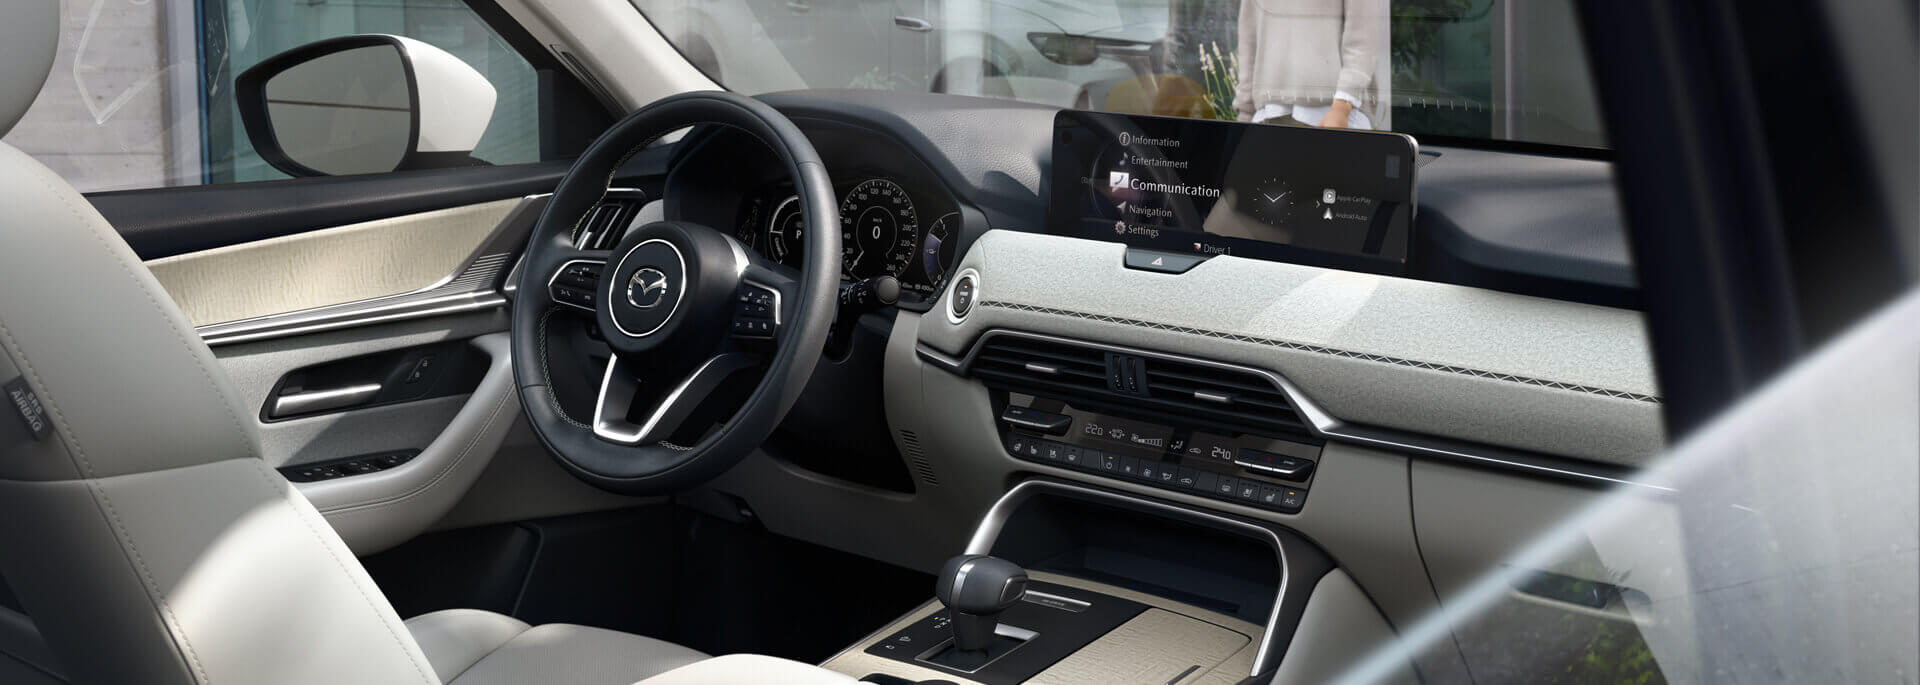 Gli spaziosi interni del nuovo SUV ibrido plug-in Mazda CX-60, arricchiti dalla maestria giapponese.